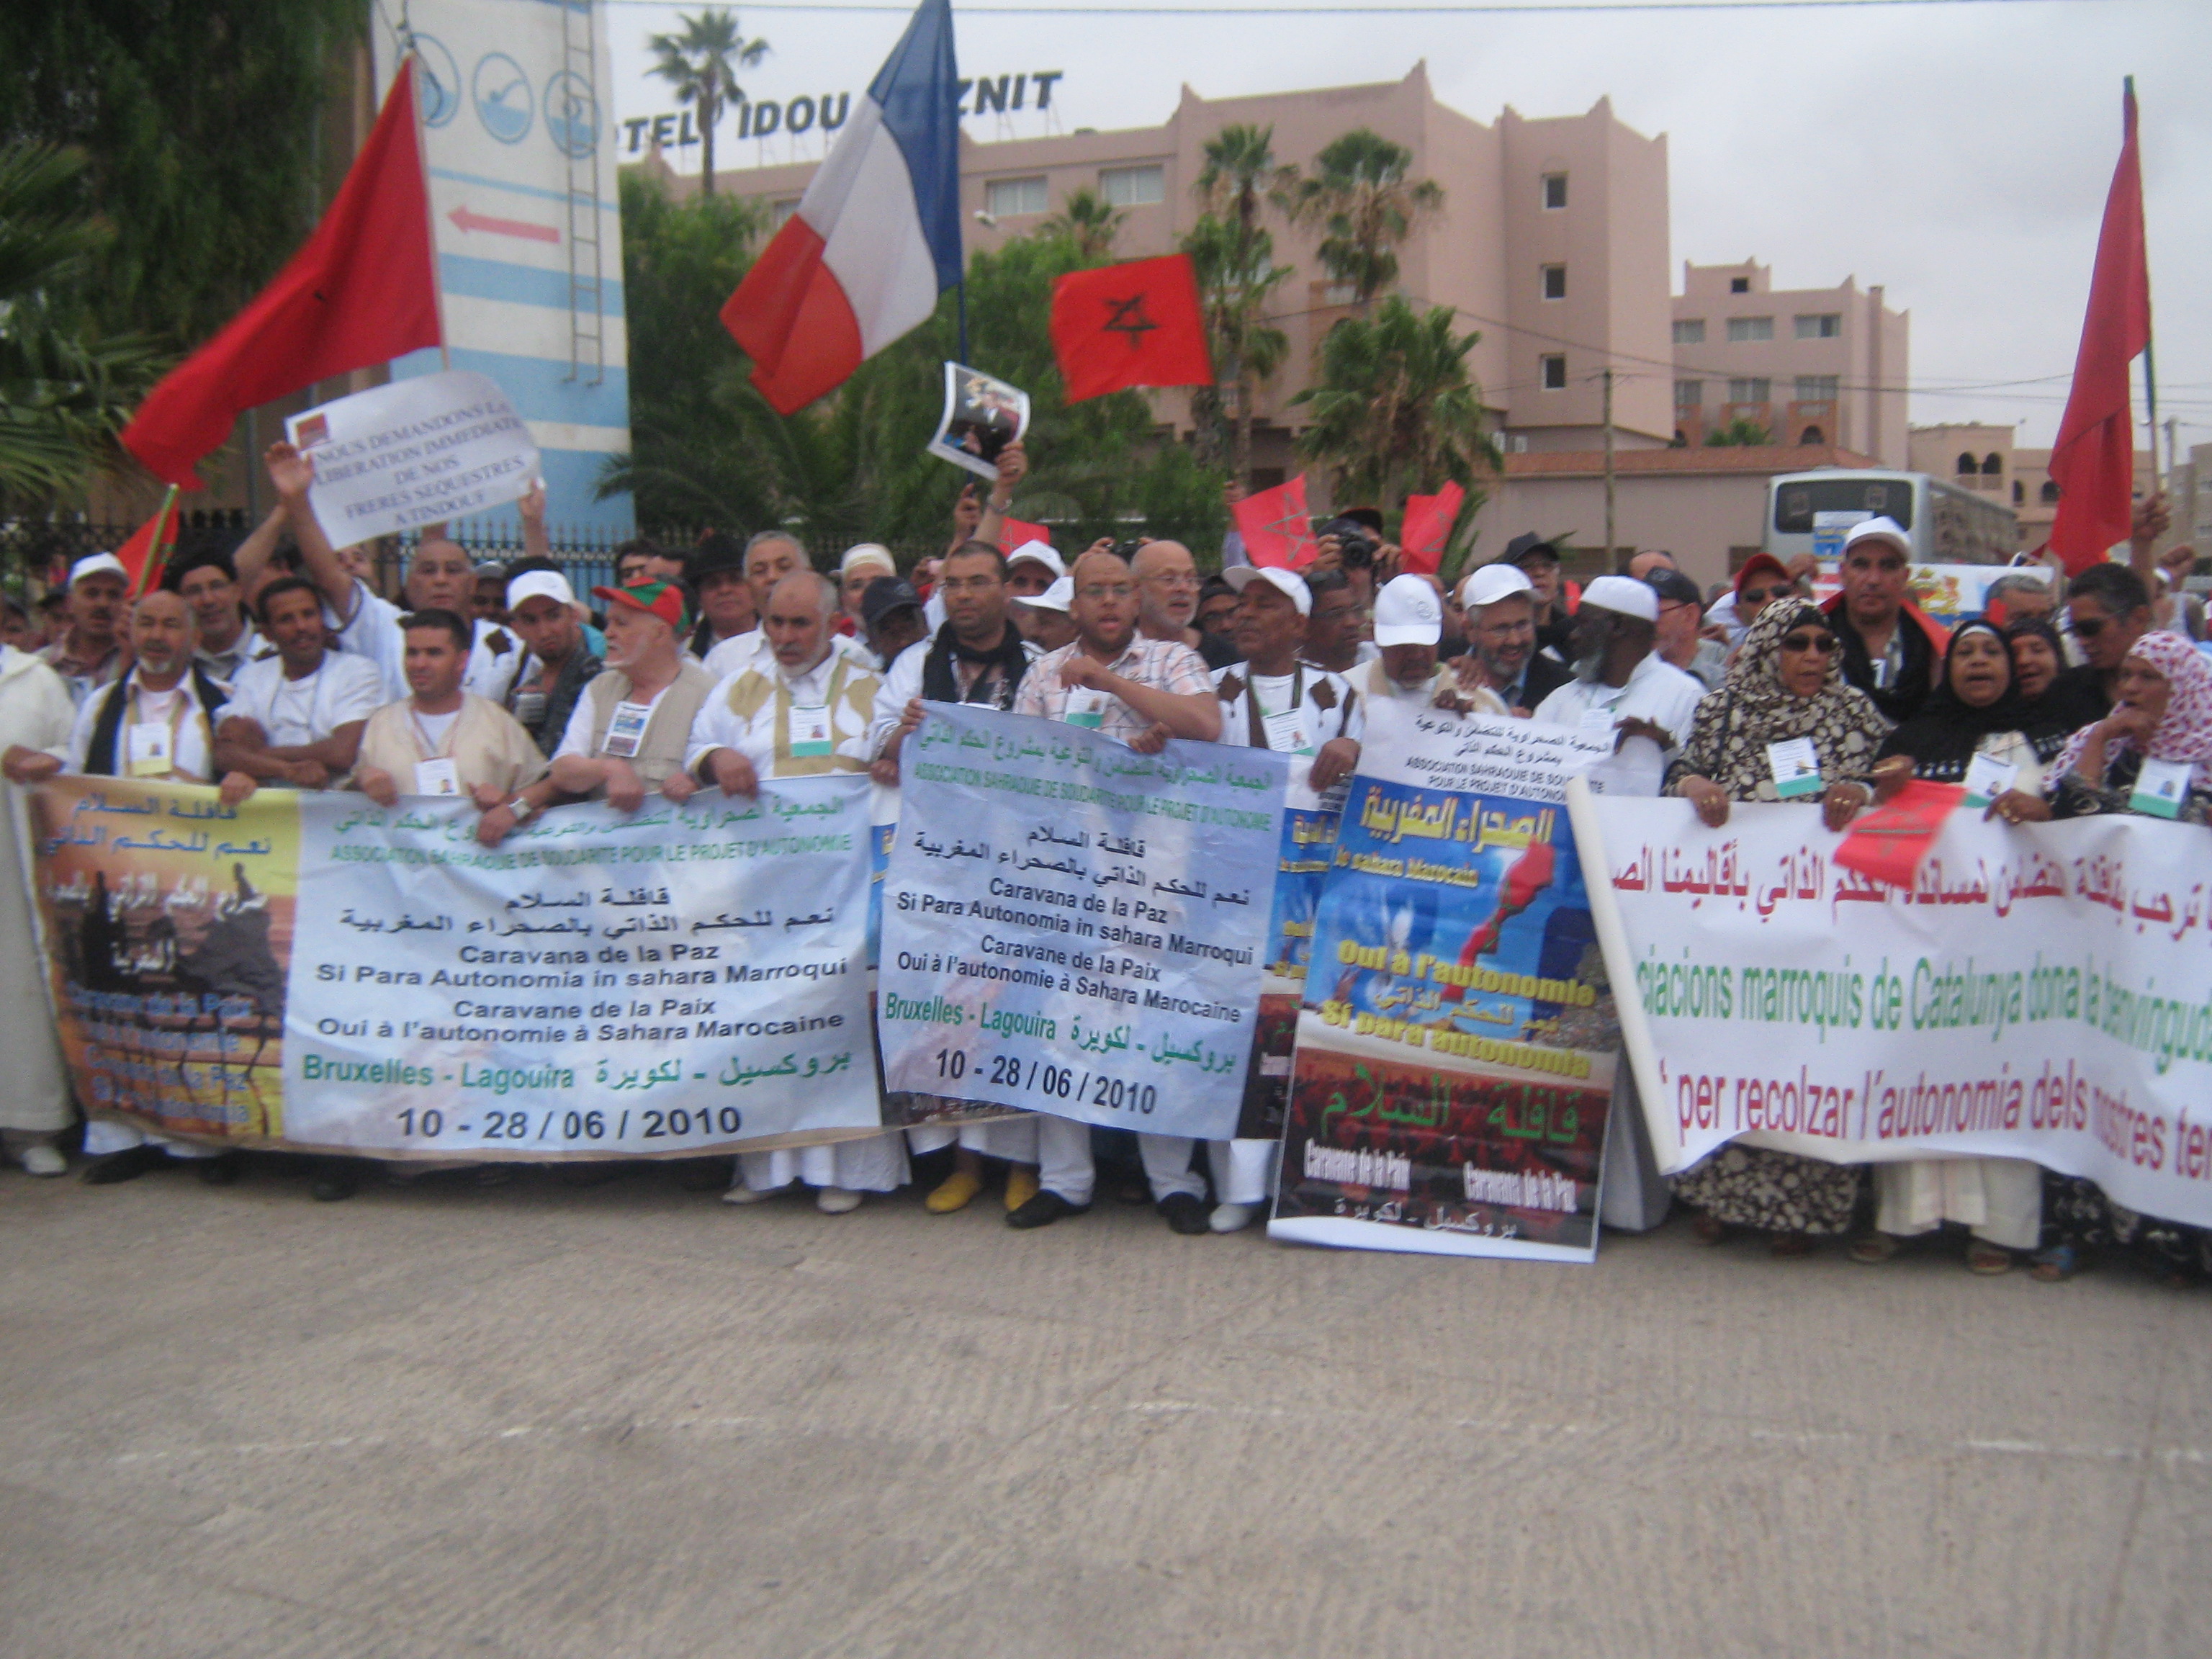 قافلة السلام لتأييد الحكم الذاتي بالأقاليم الجنوبية المغربية تحل بتيزنيت +صور 1006170820481101736242894